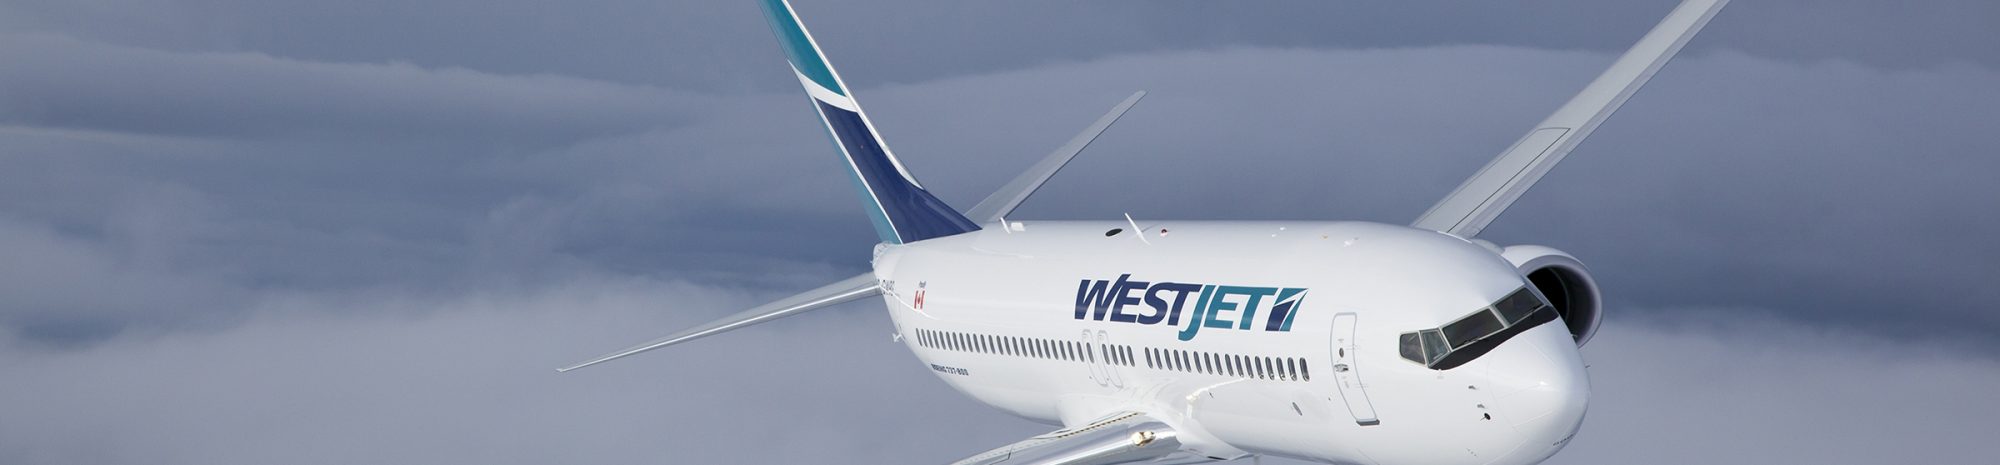 Westjet inaugure sa liaison entre Toronto et l’aéroport de Londres Gatwick